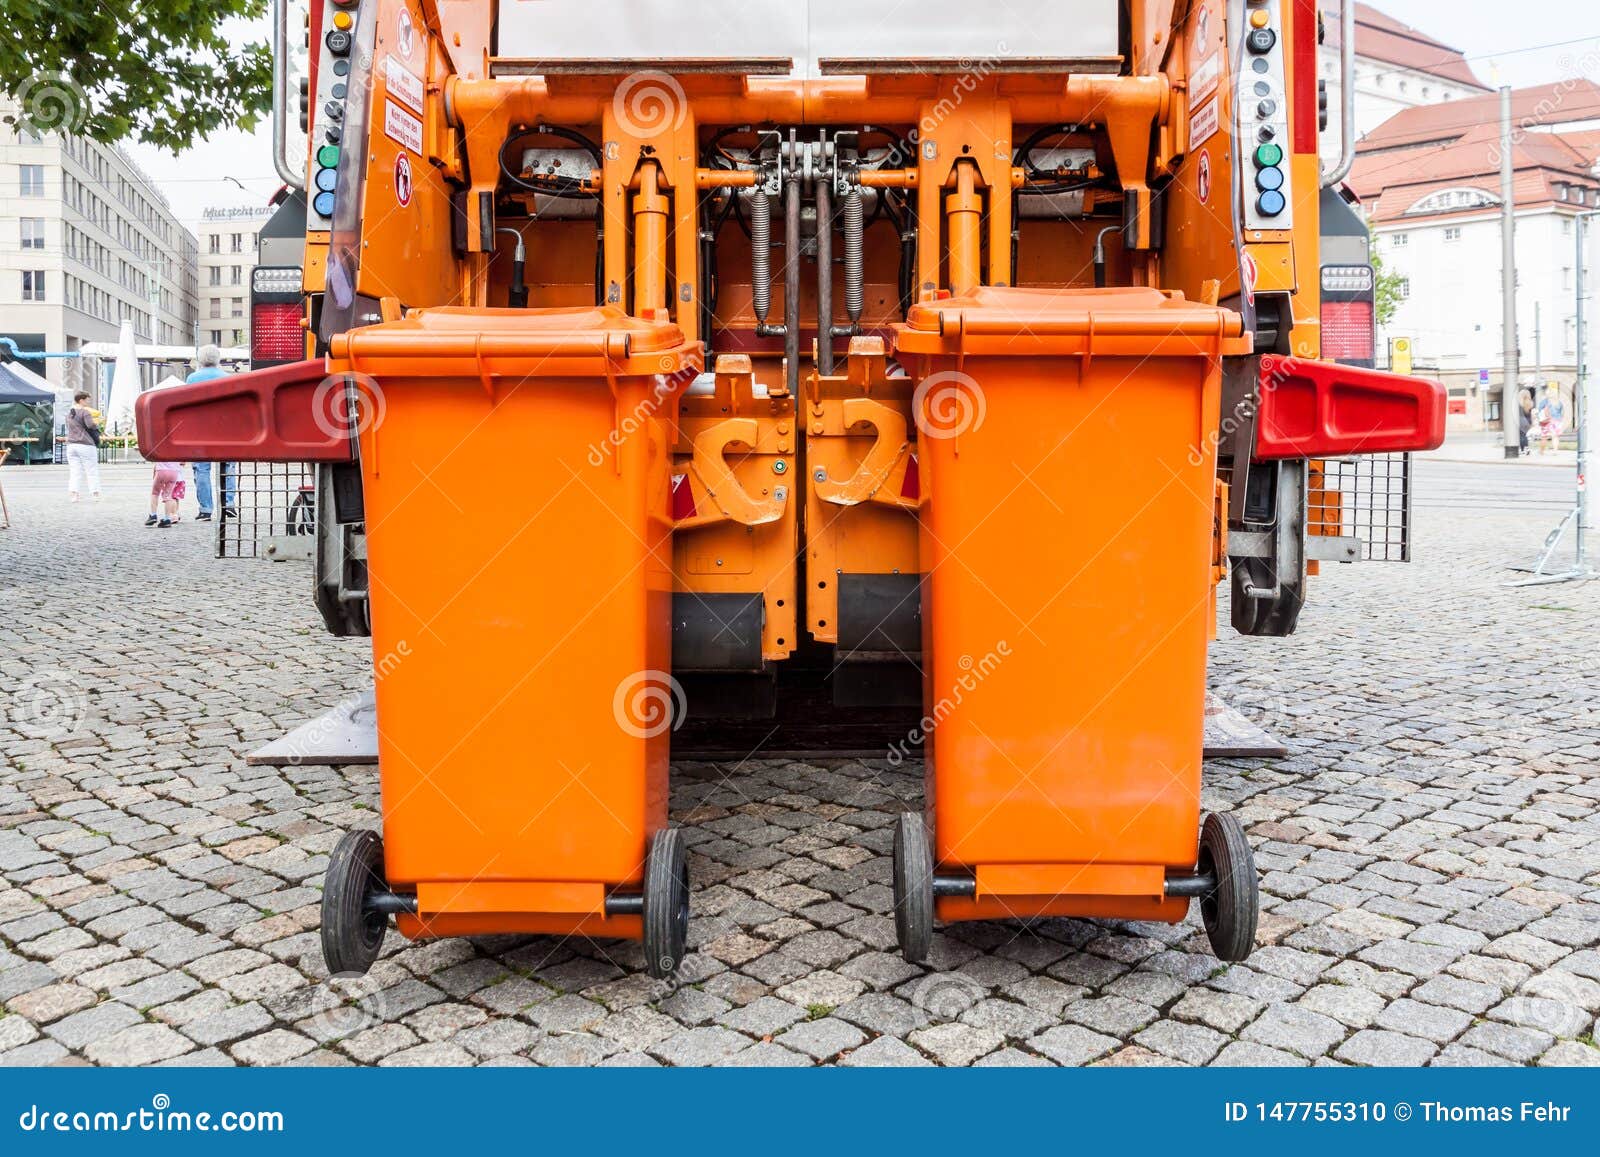 Oranje vuilnisauto. De oranje auto van de vuilniscollector met container